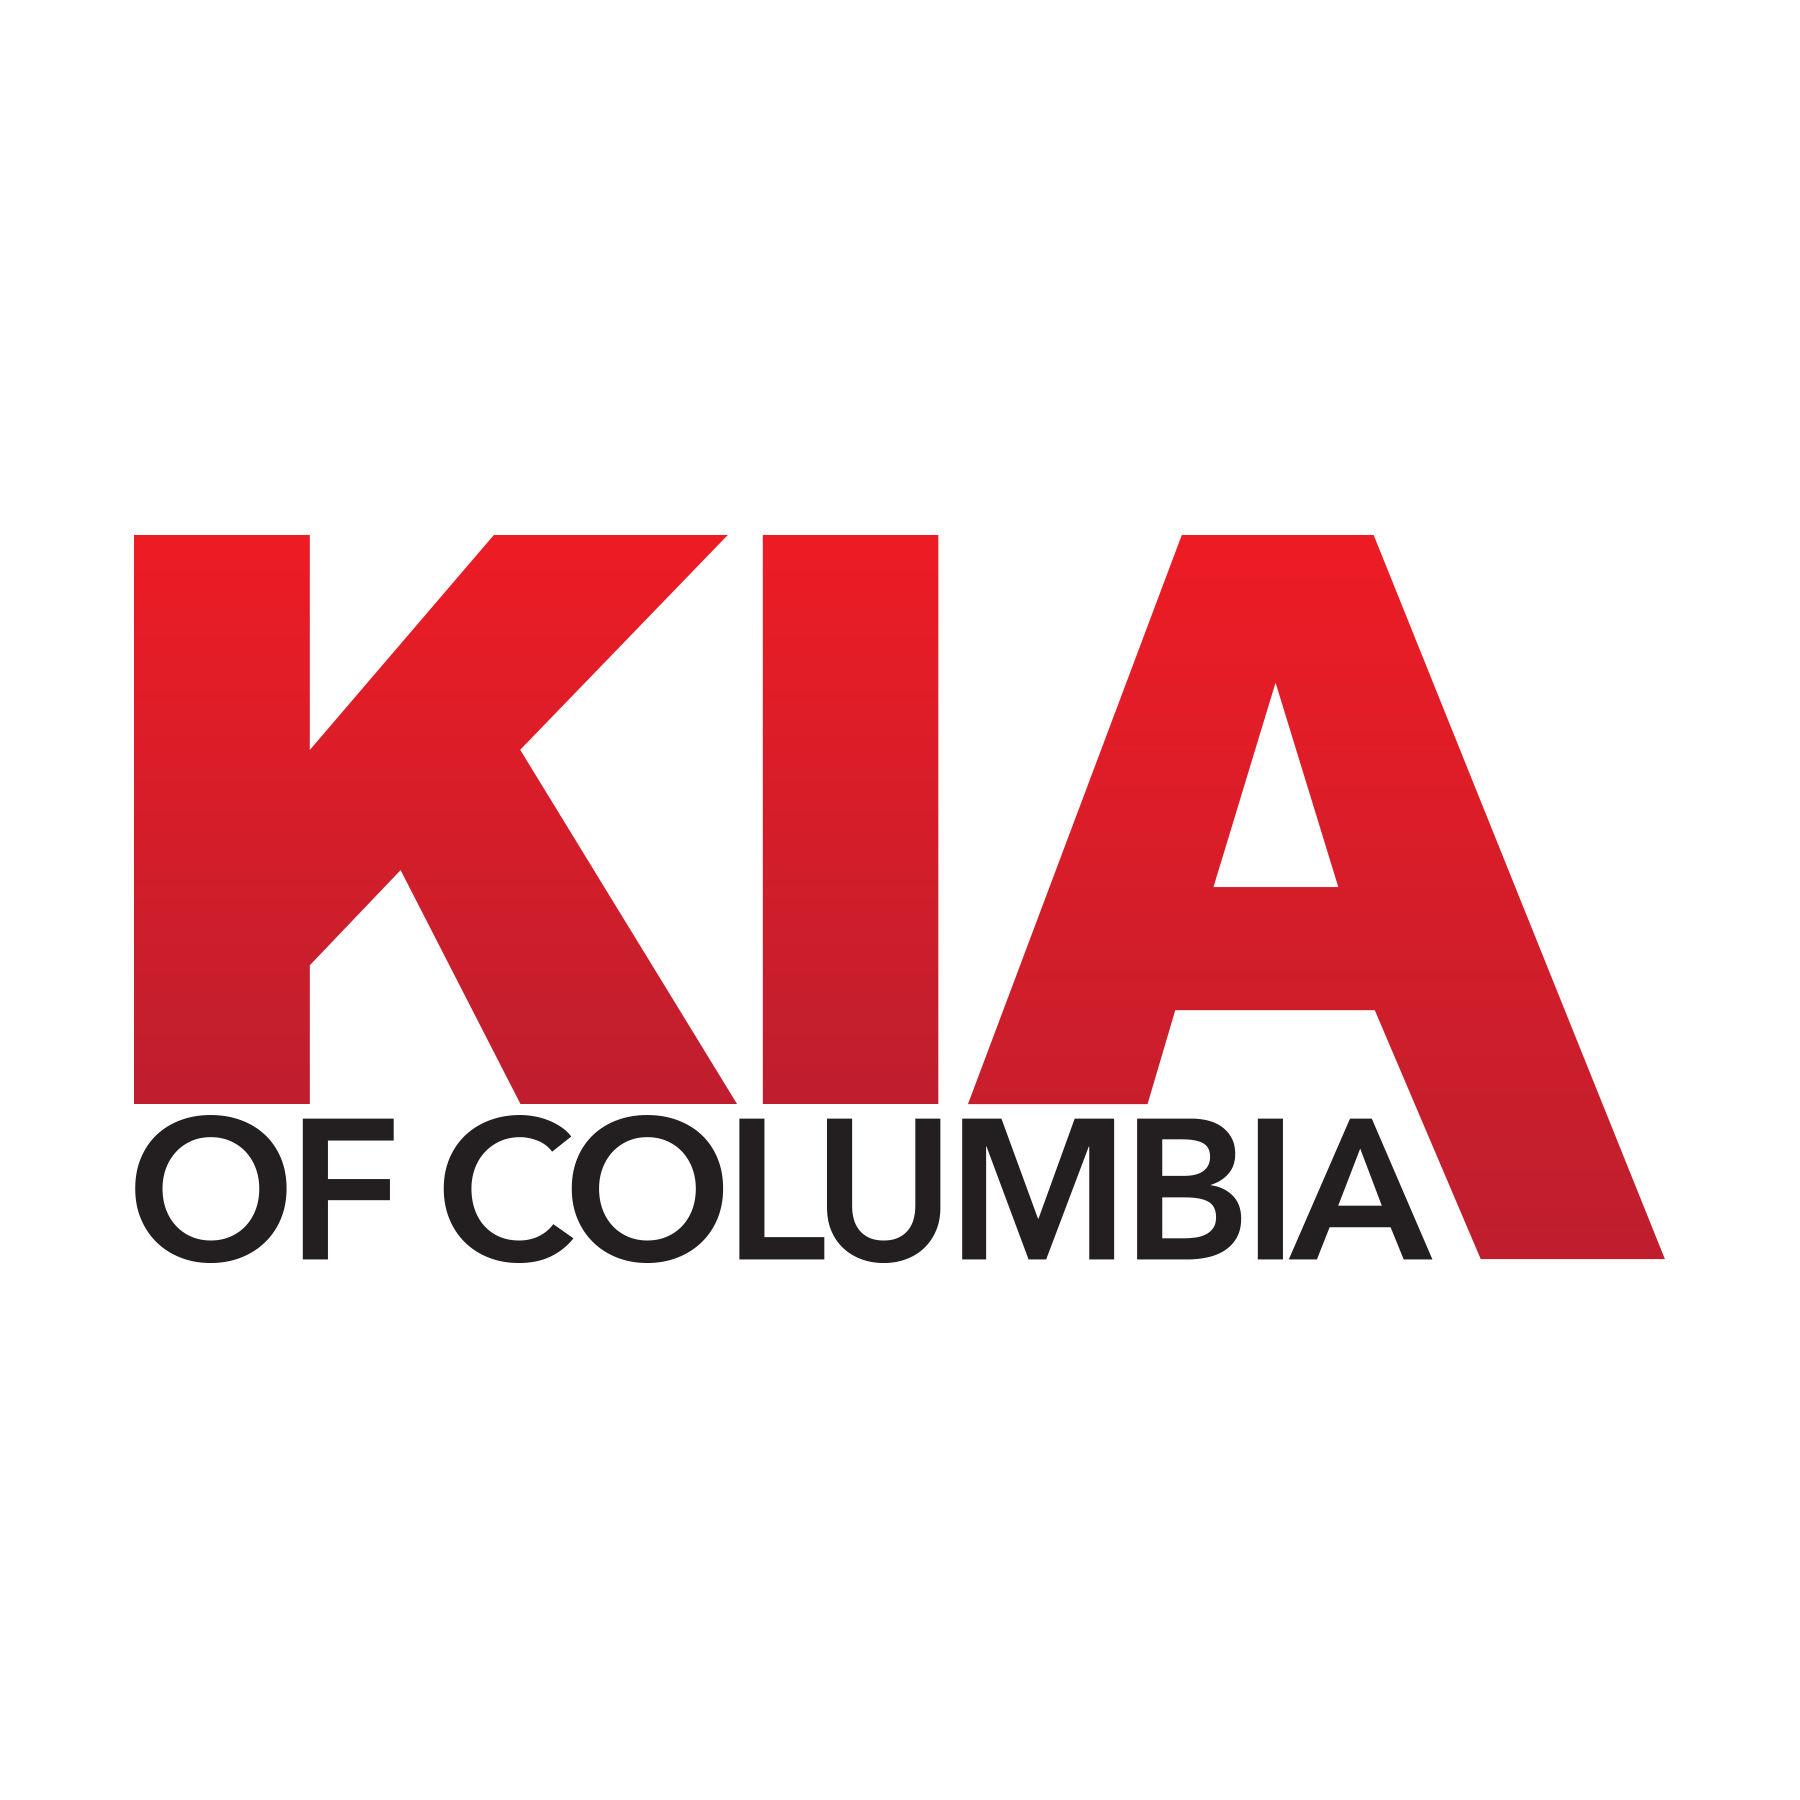 Kia of Columbia Logo